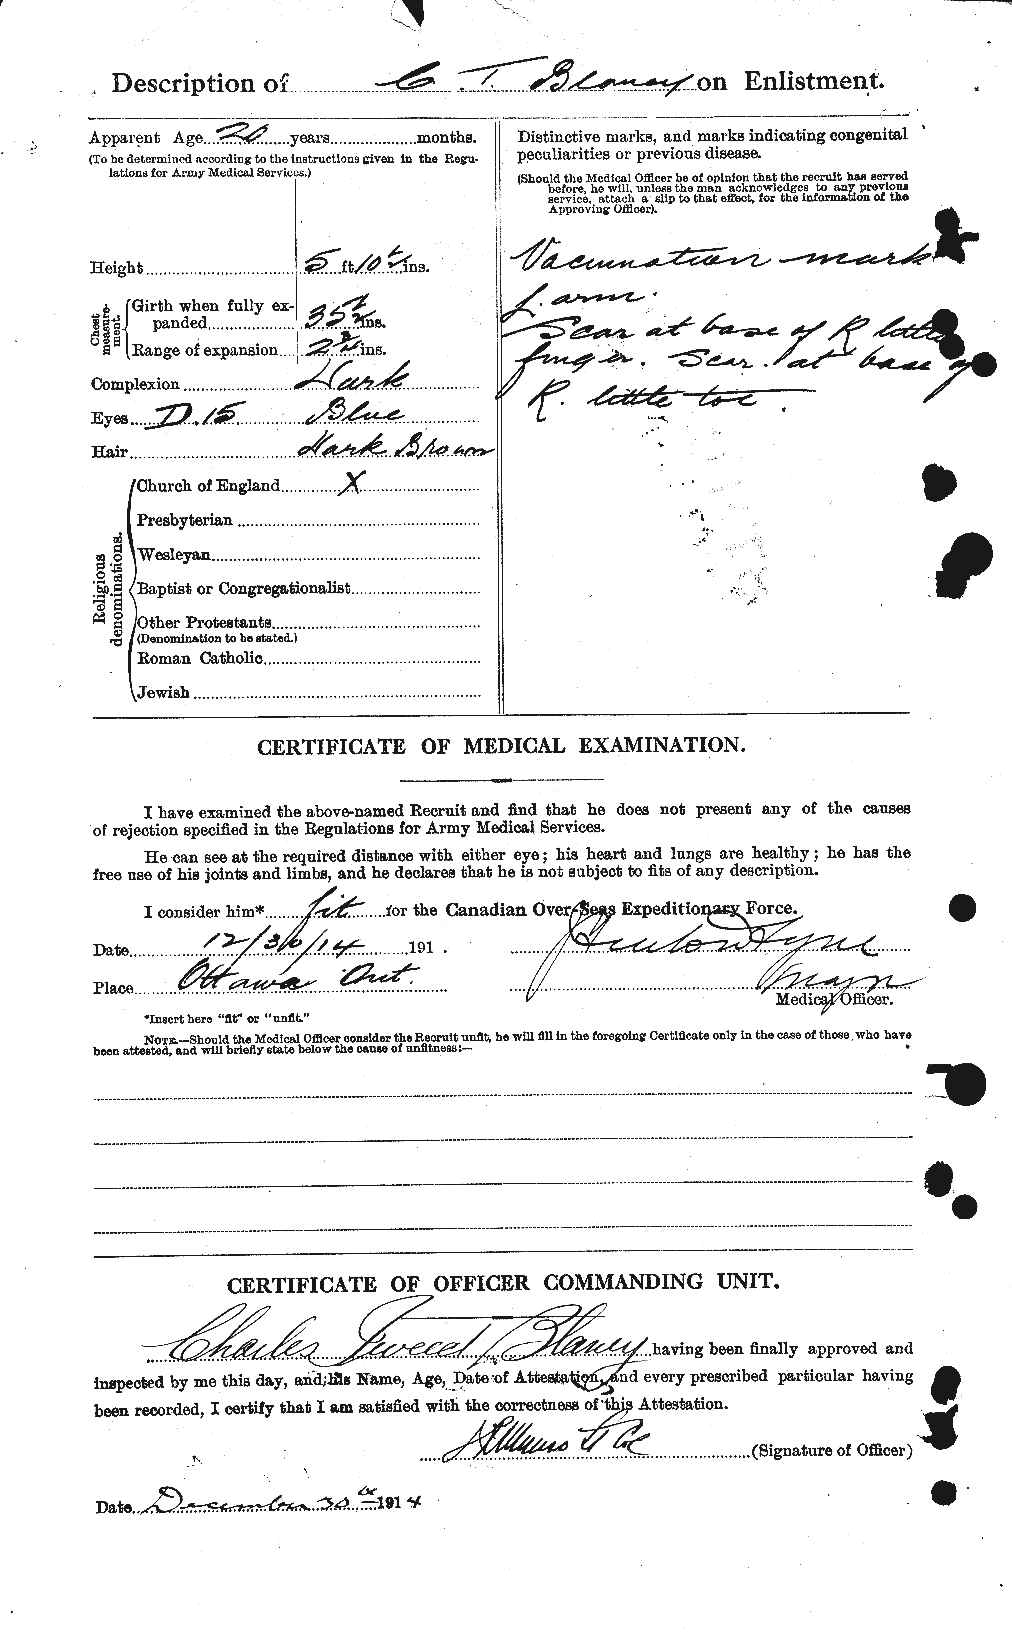 Dossiers du Personnel de la Première Guerre mondiale - CEC 245782b